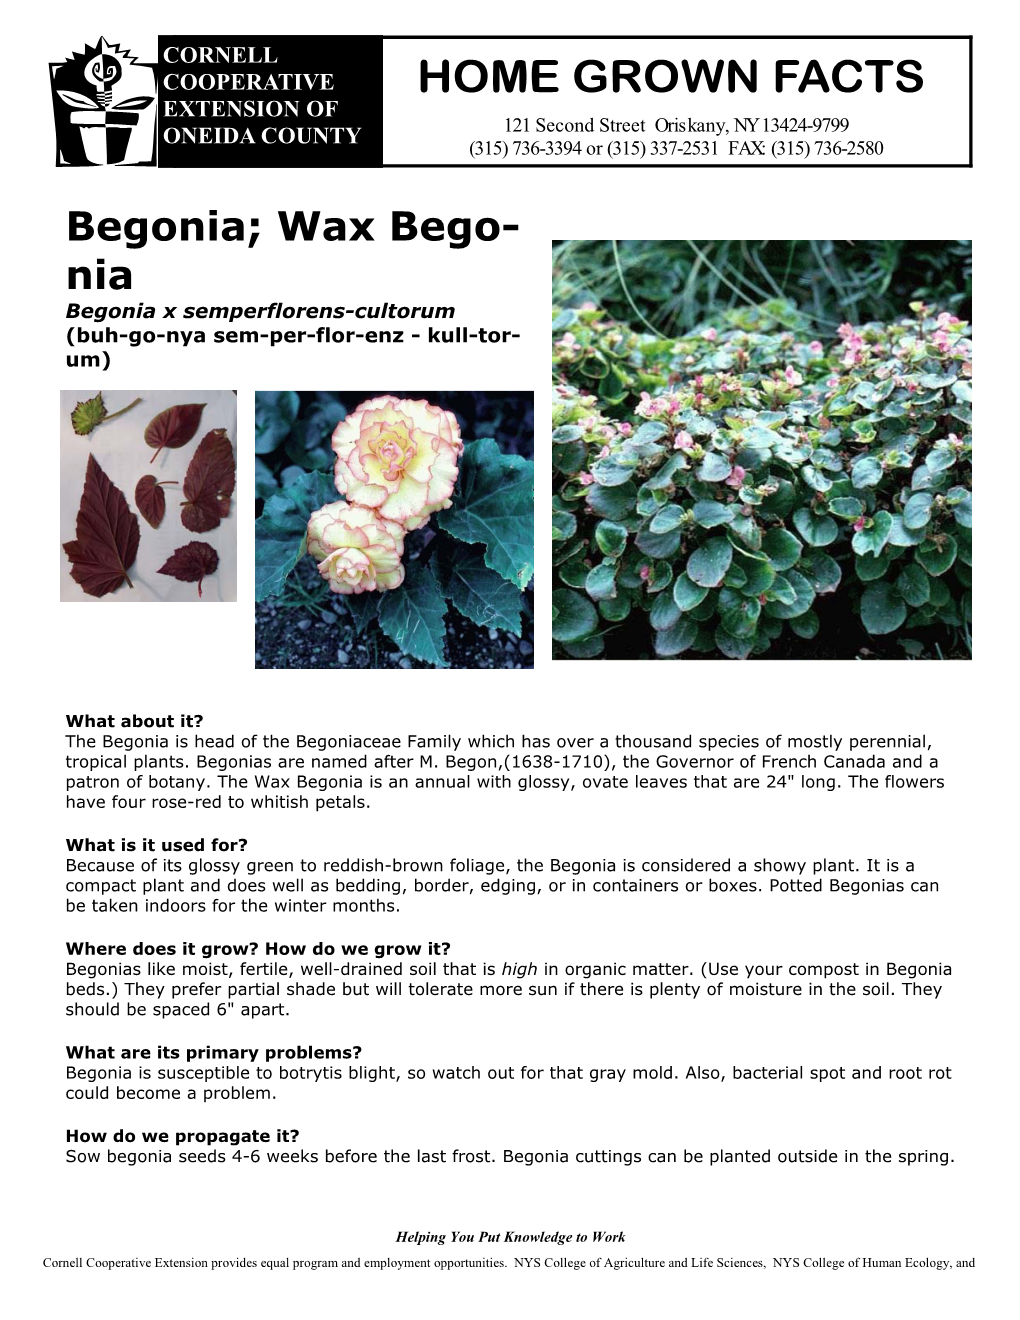 Begonia; Wax Bego